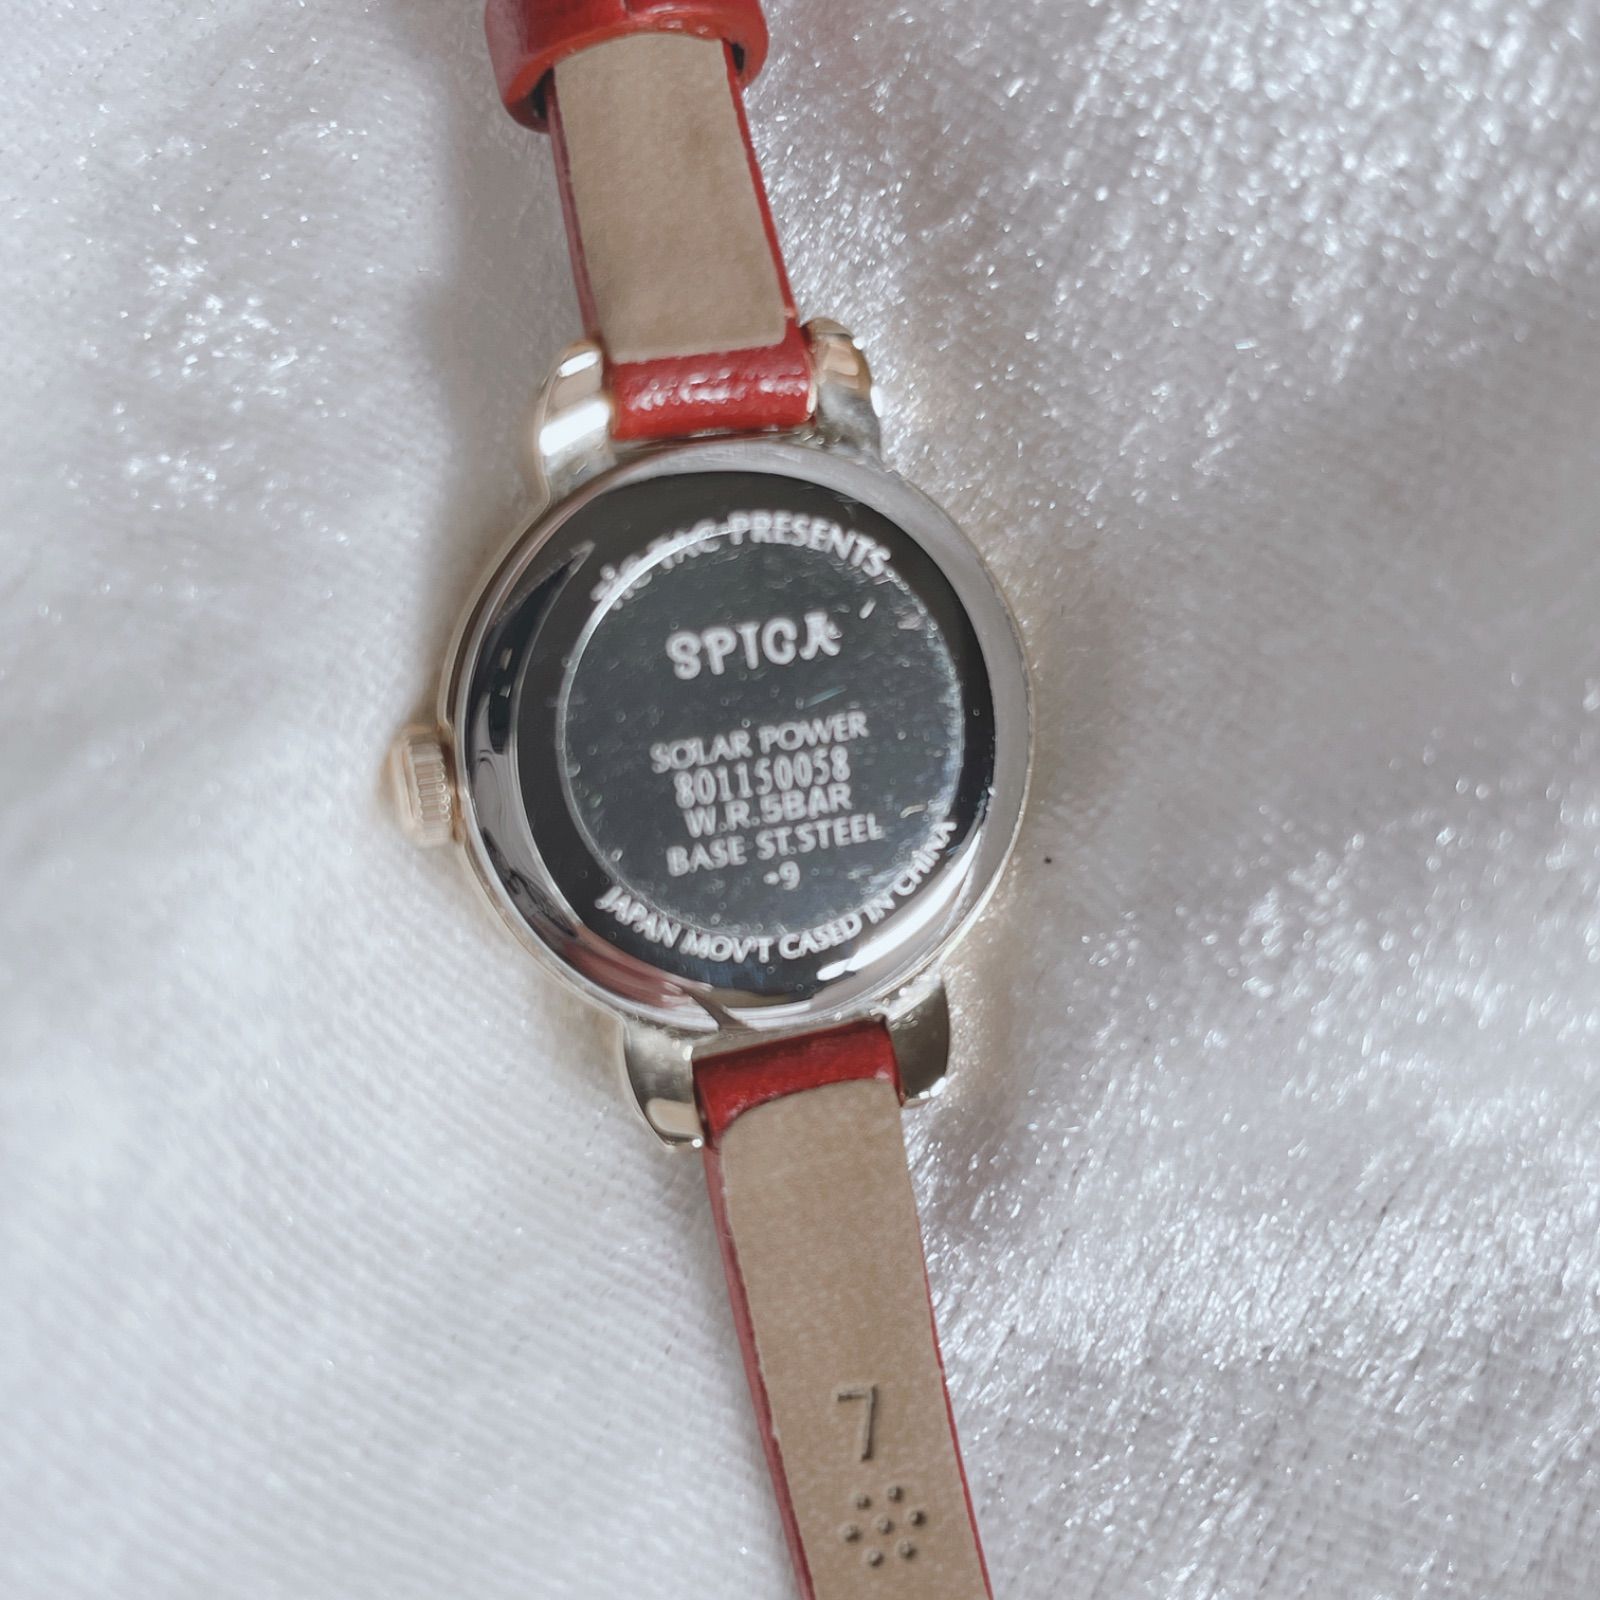 7,222円腕時計 SPICA ソーラー 赤 ゴールド レザーベルト アラビア数字